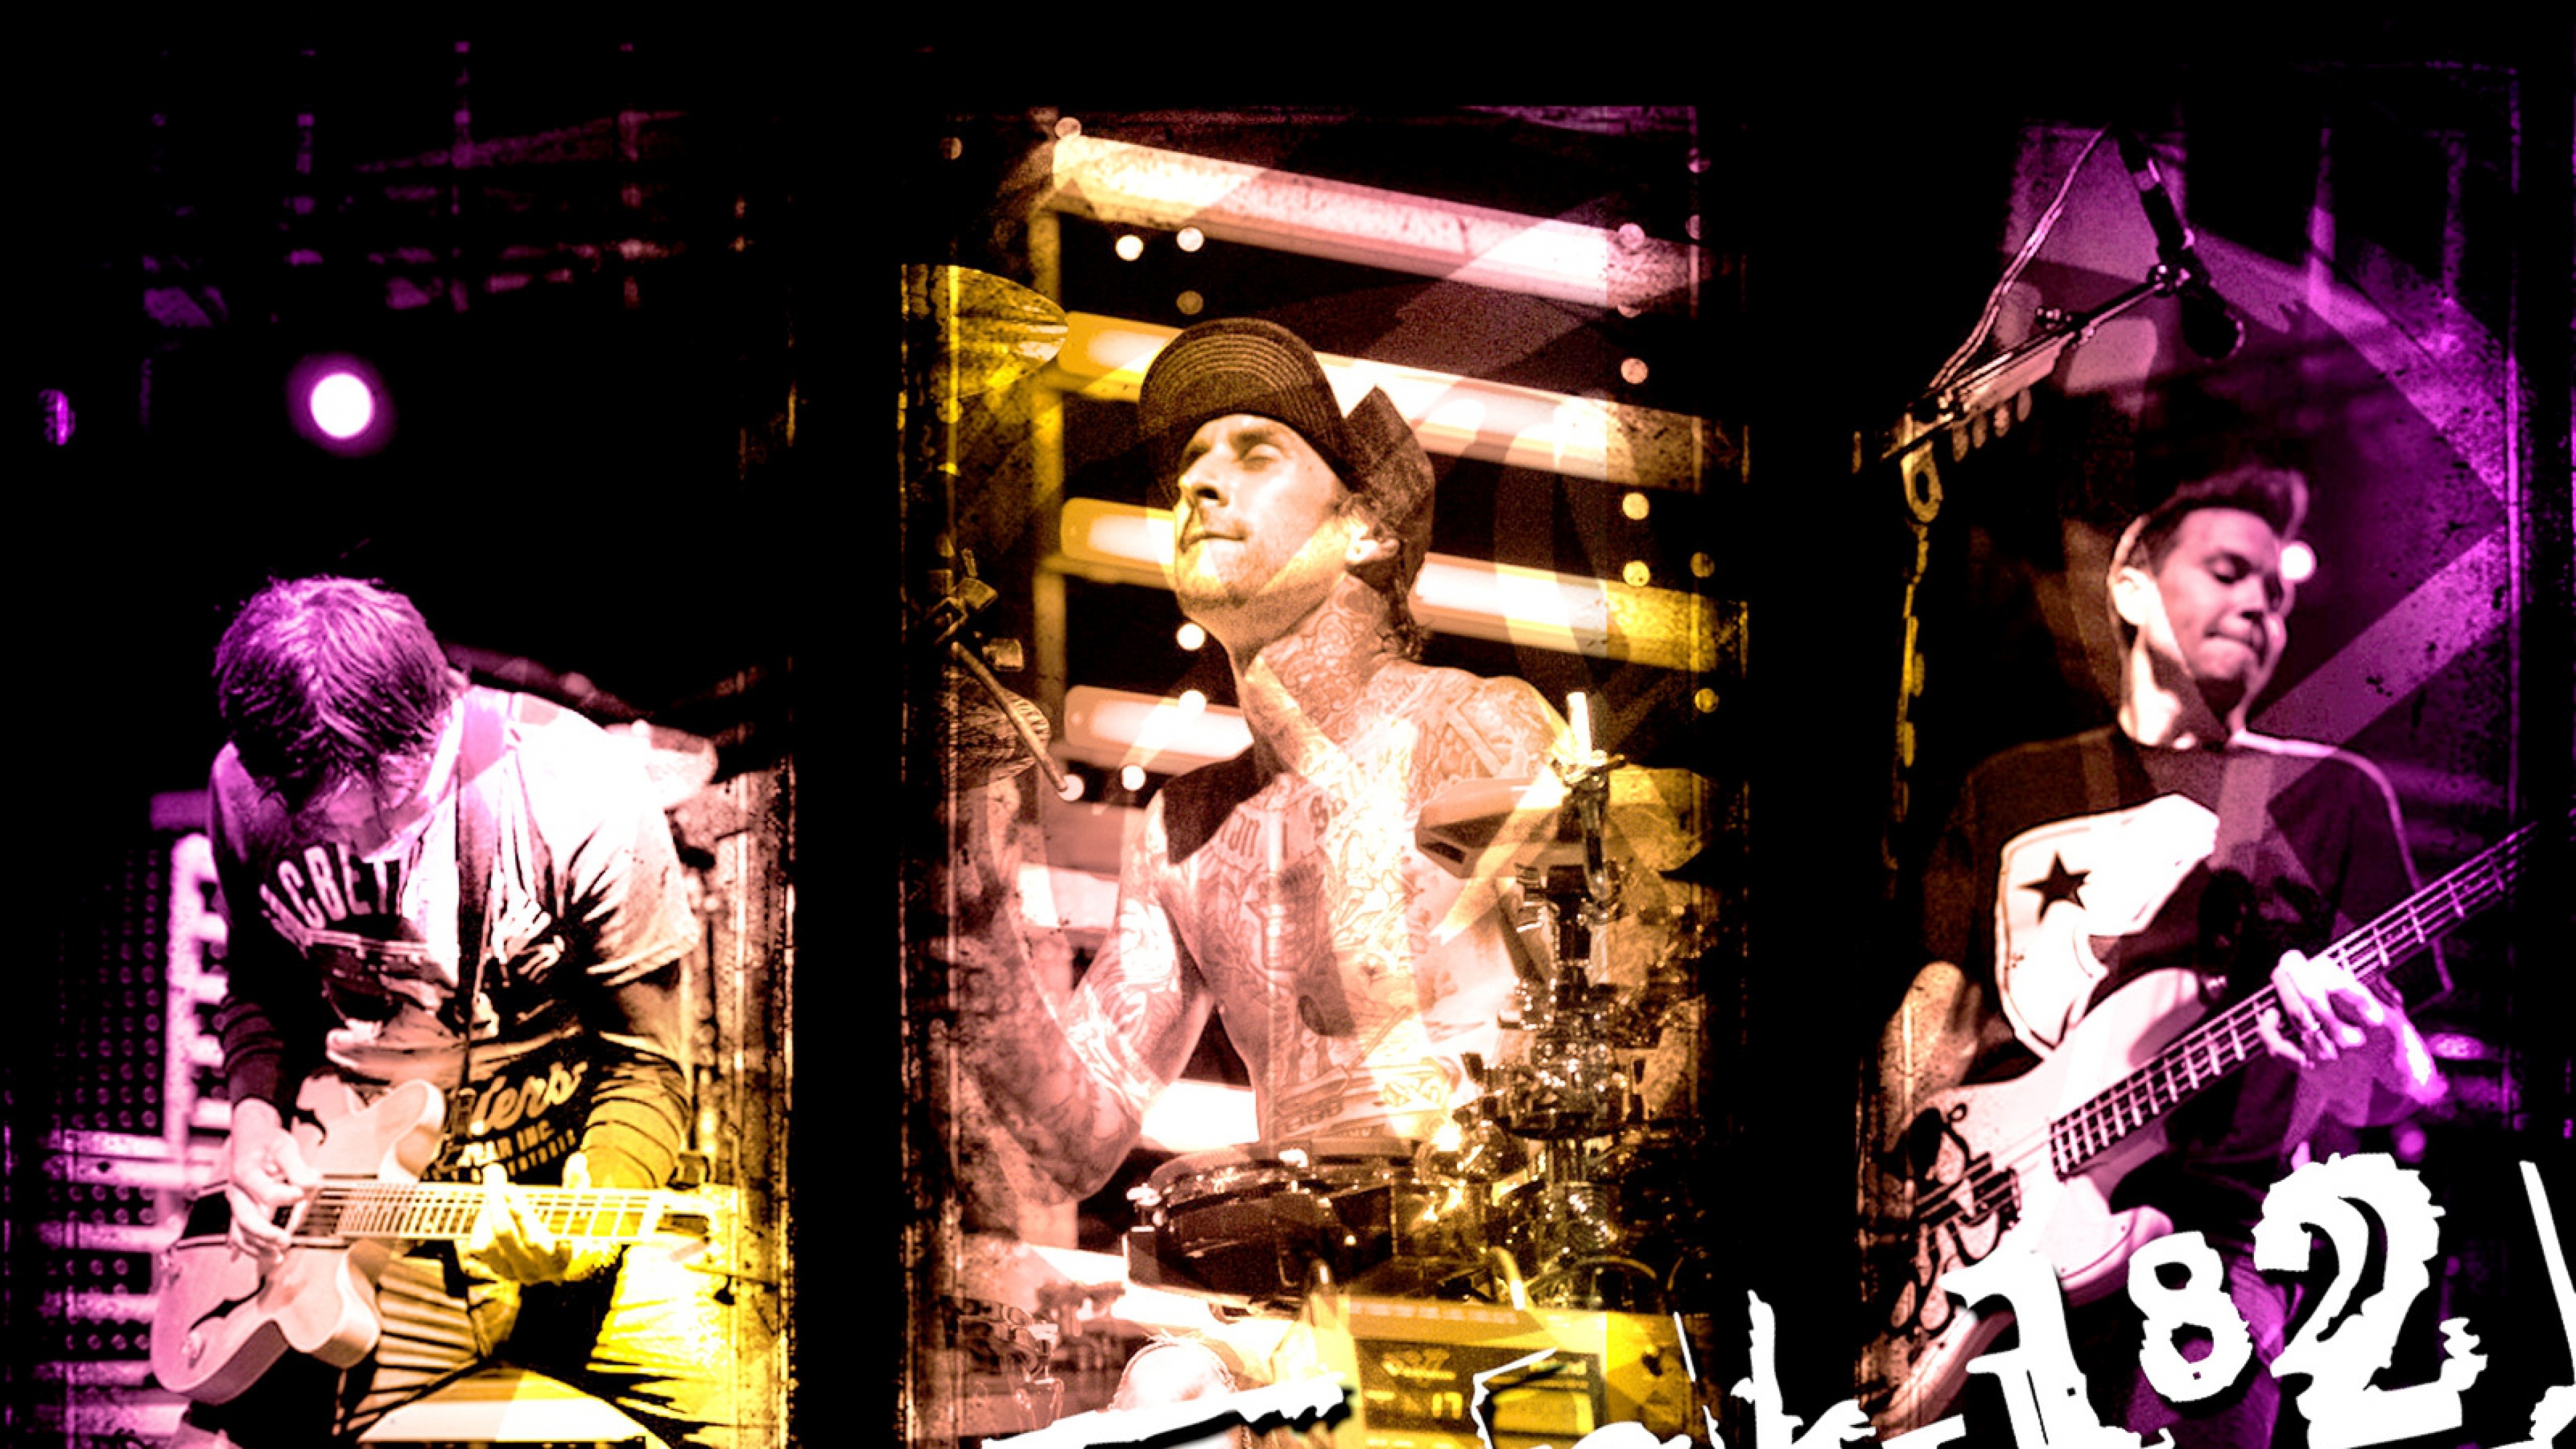 Wallpaper Travis Barker Blink182 Blink Pop Punk Punk Rock Background   Download Free Image